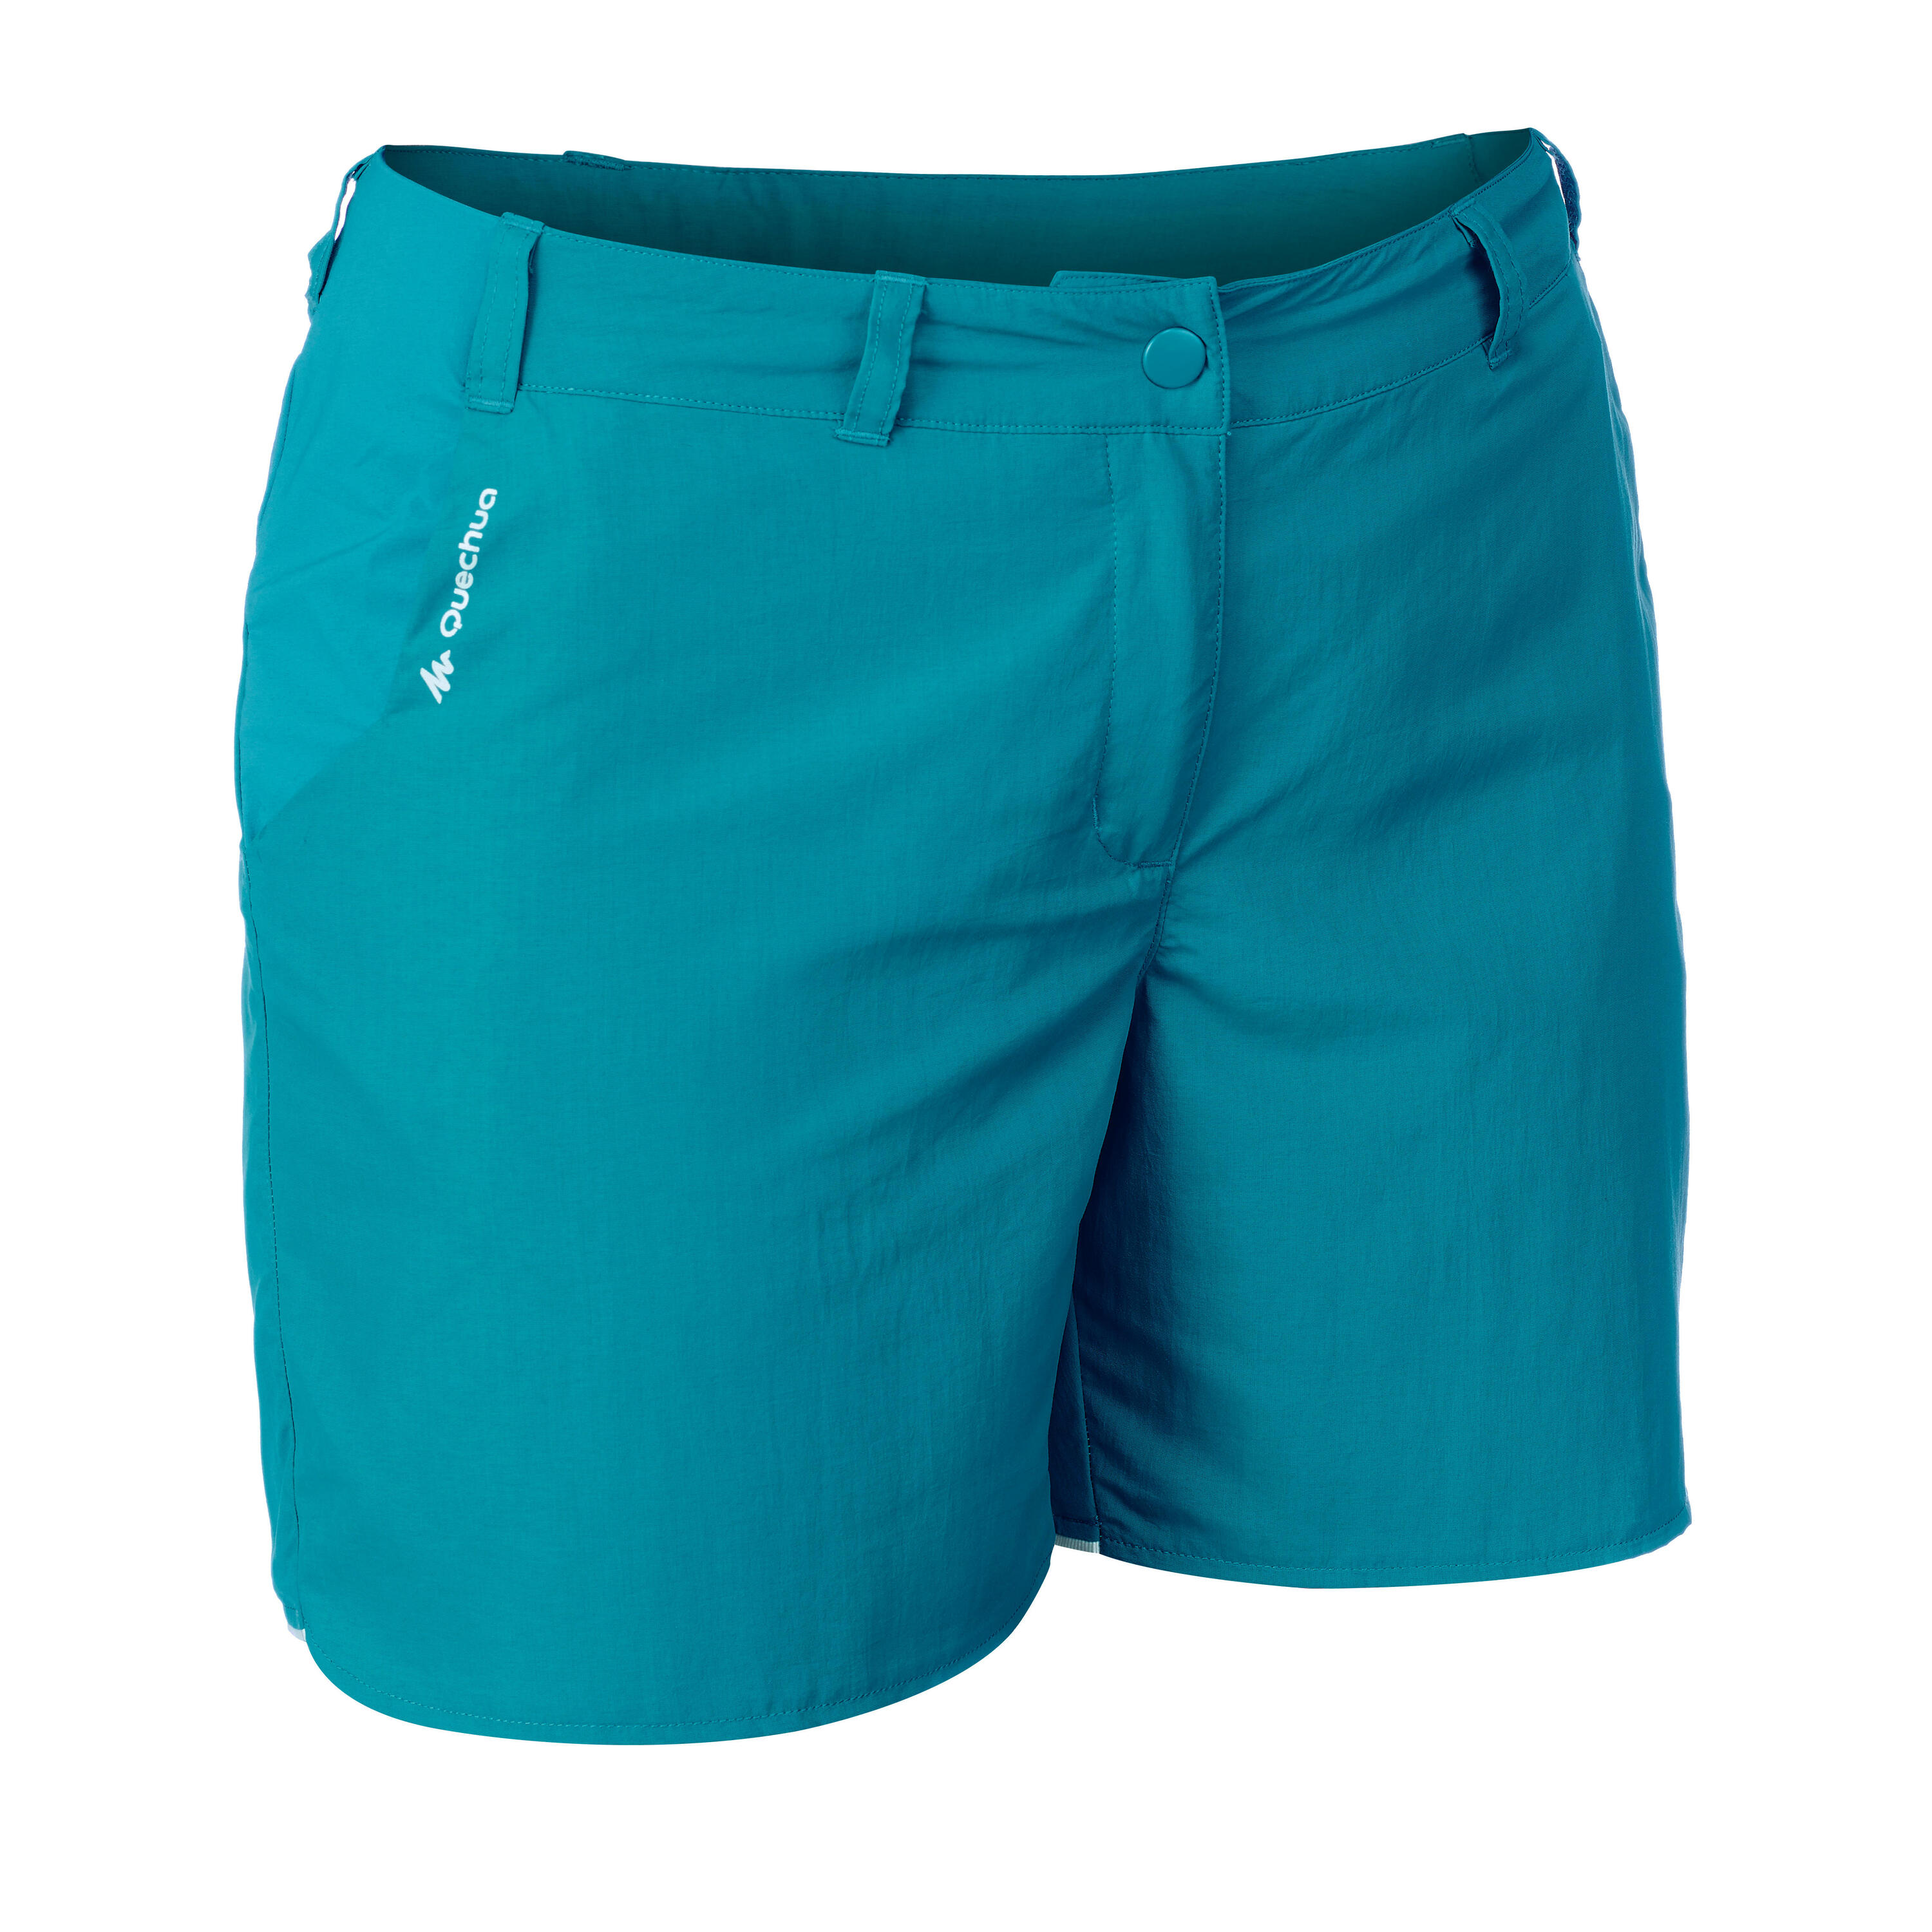 QUECHUA MH100 Women's Mountain Hiking Shorts - Turquoise Blue